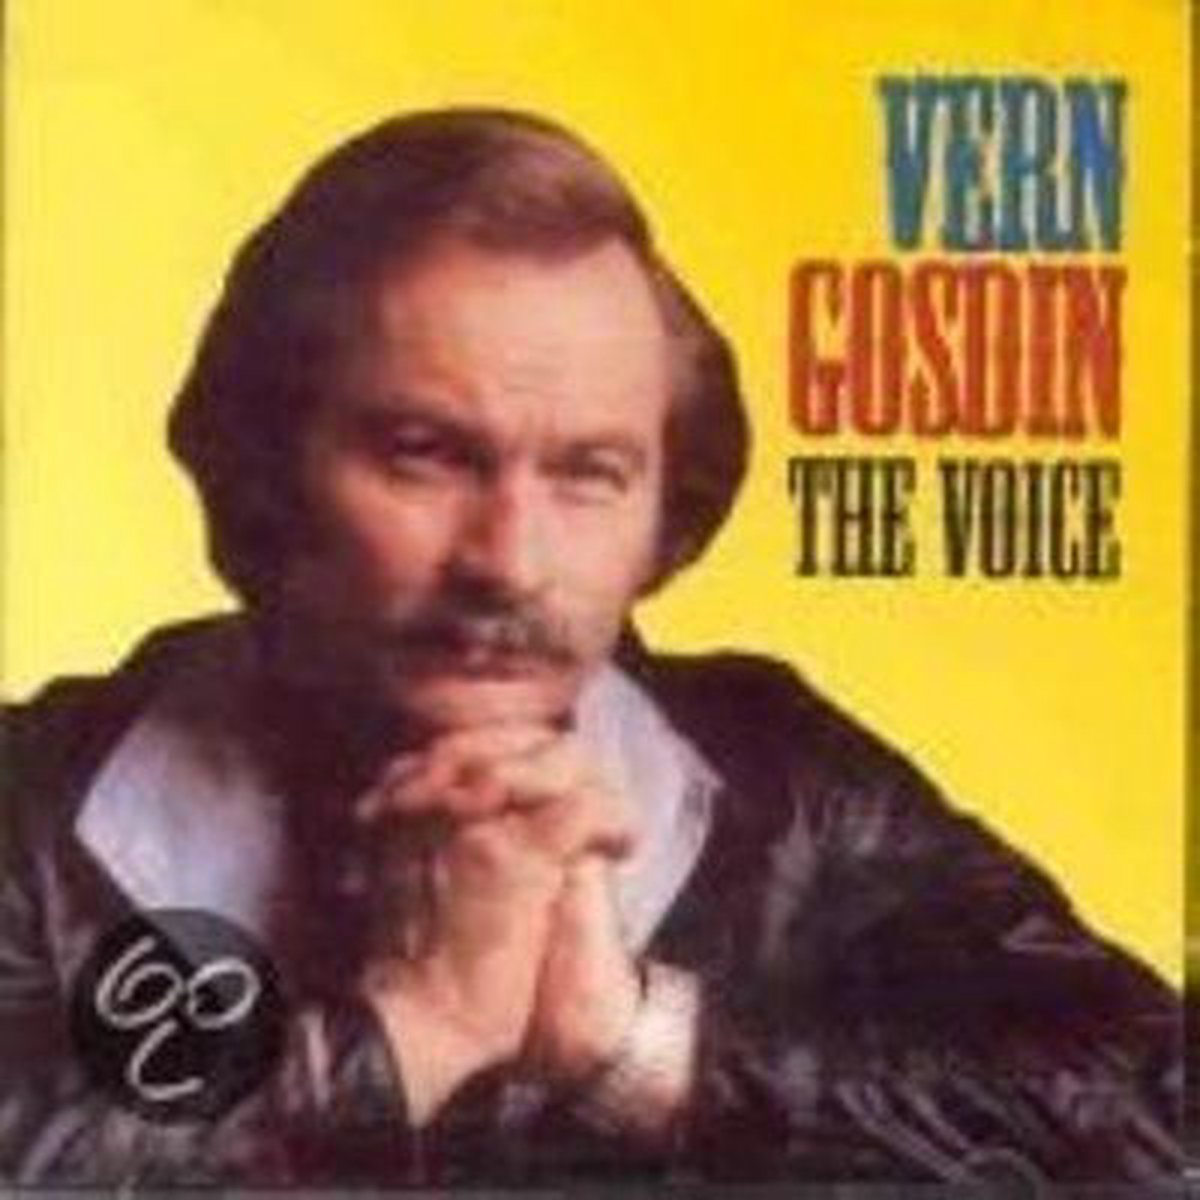 Vern Gosdin - The Voice (CD) - Vern Gosdin